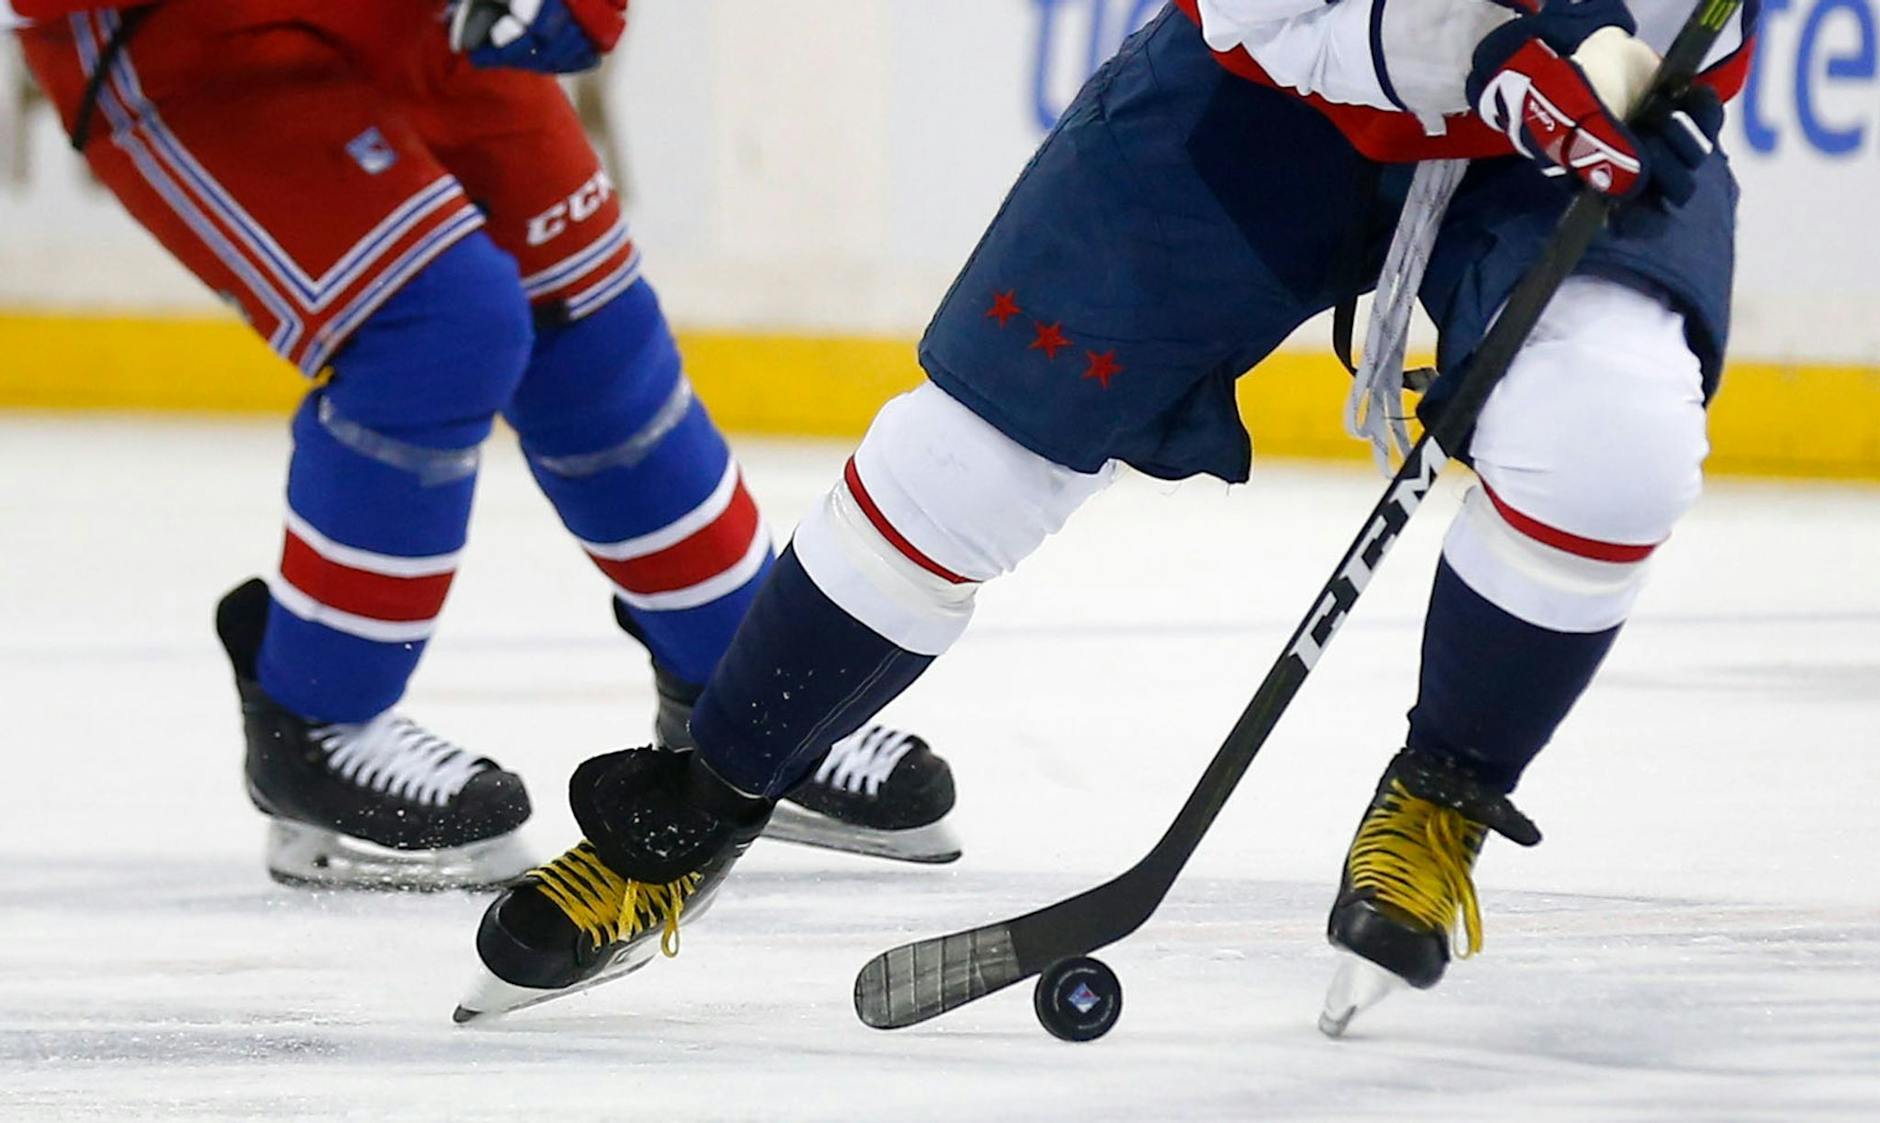 ARCHIV - Zwei Eishockeyspieler kämpfen um den Puck.  